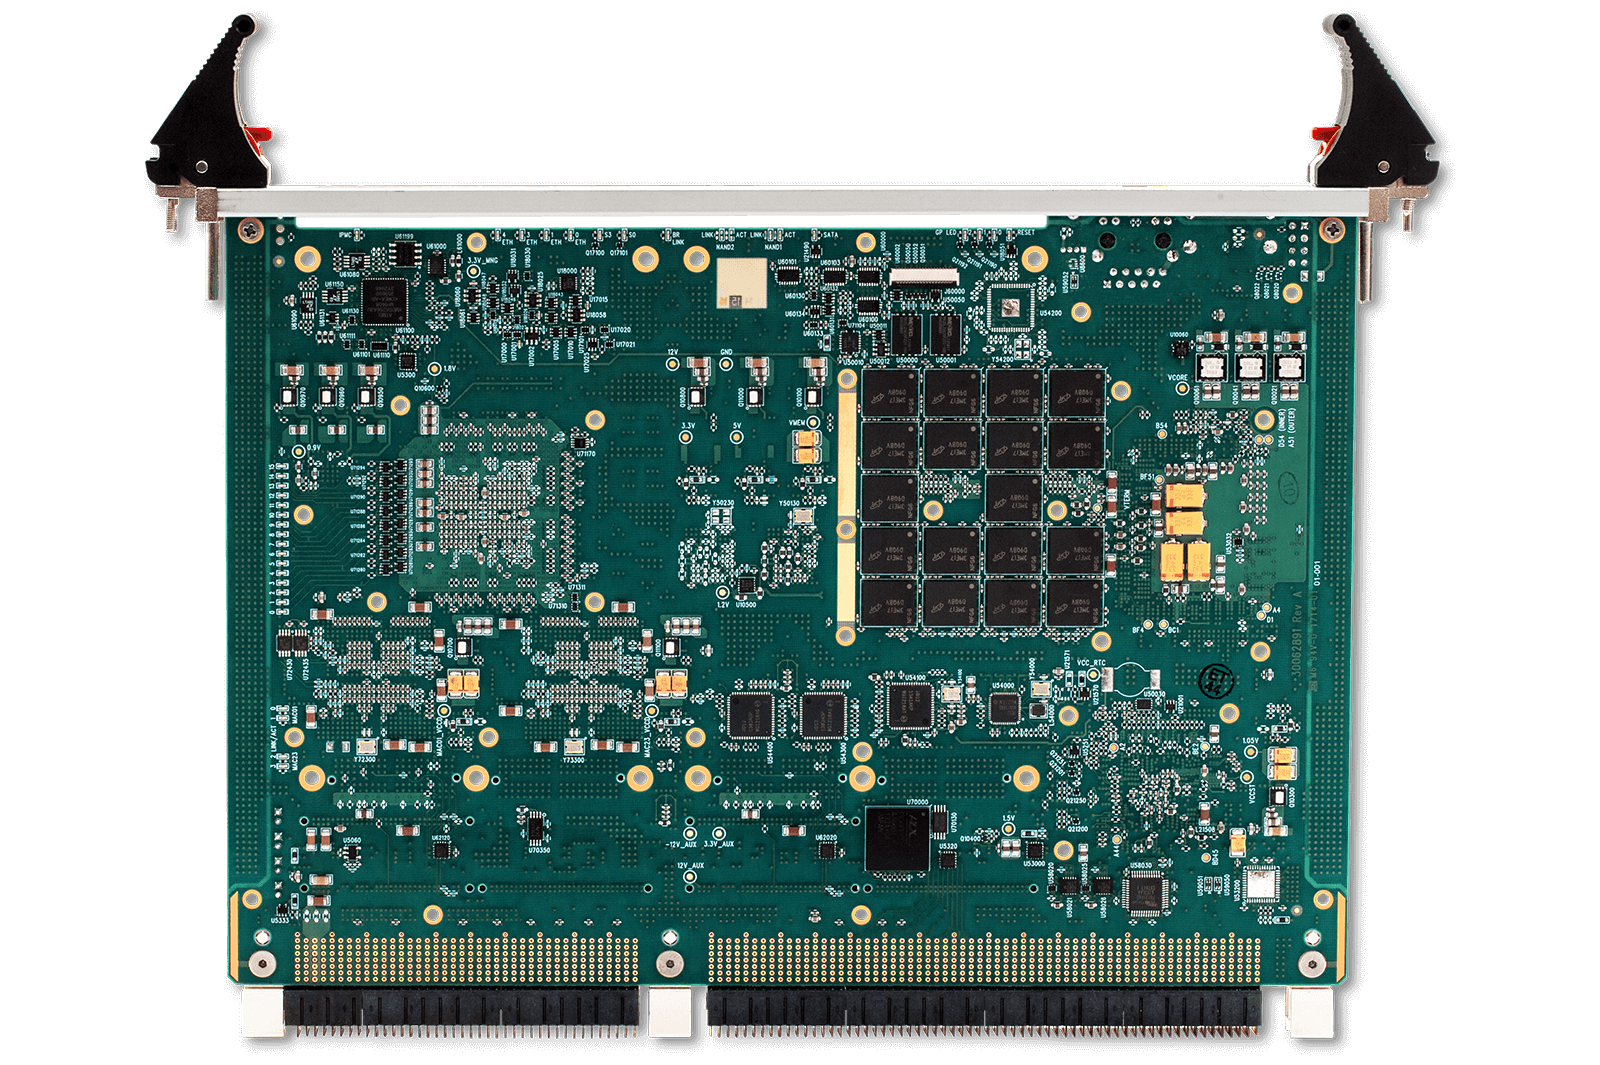 XCalibur4540 | 6U VPX SBC with 5th Gen Intel Core i7 Processor